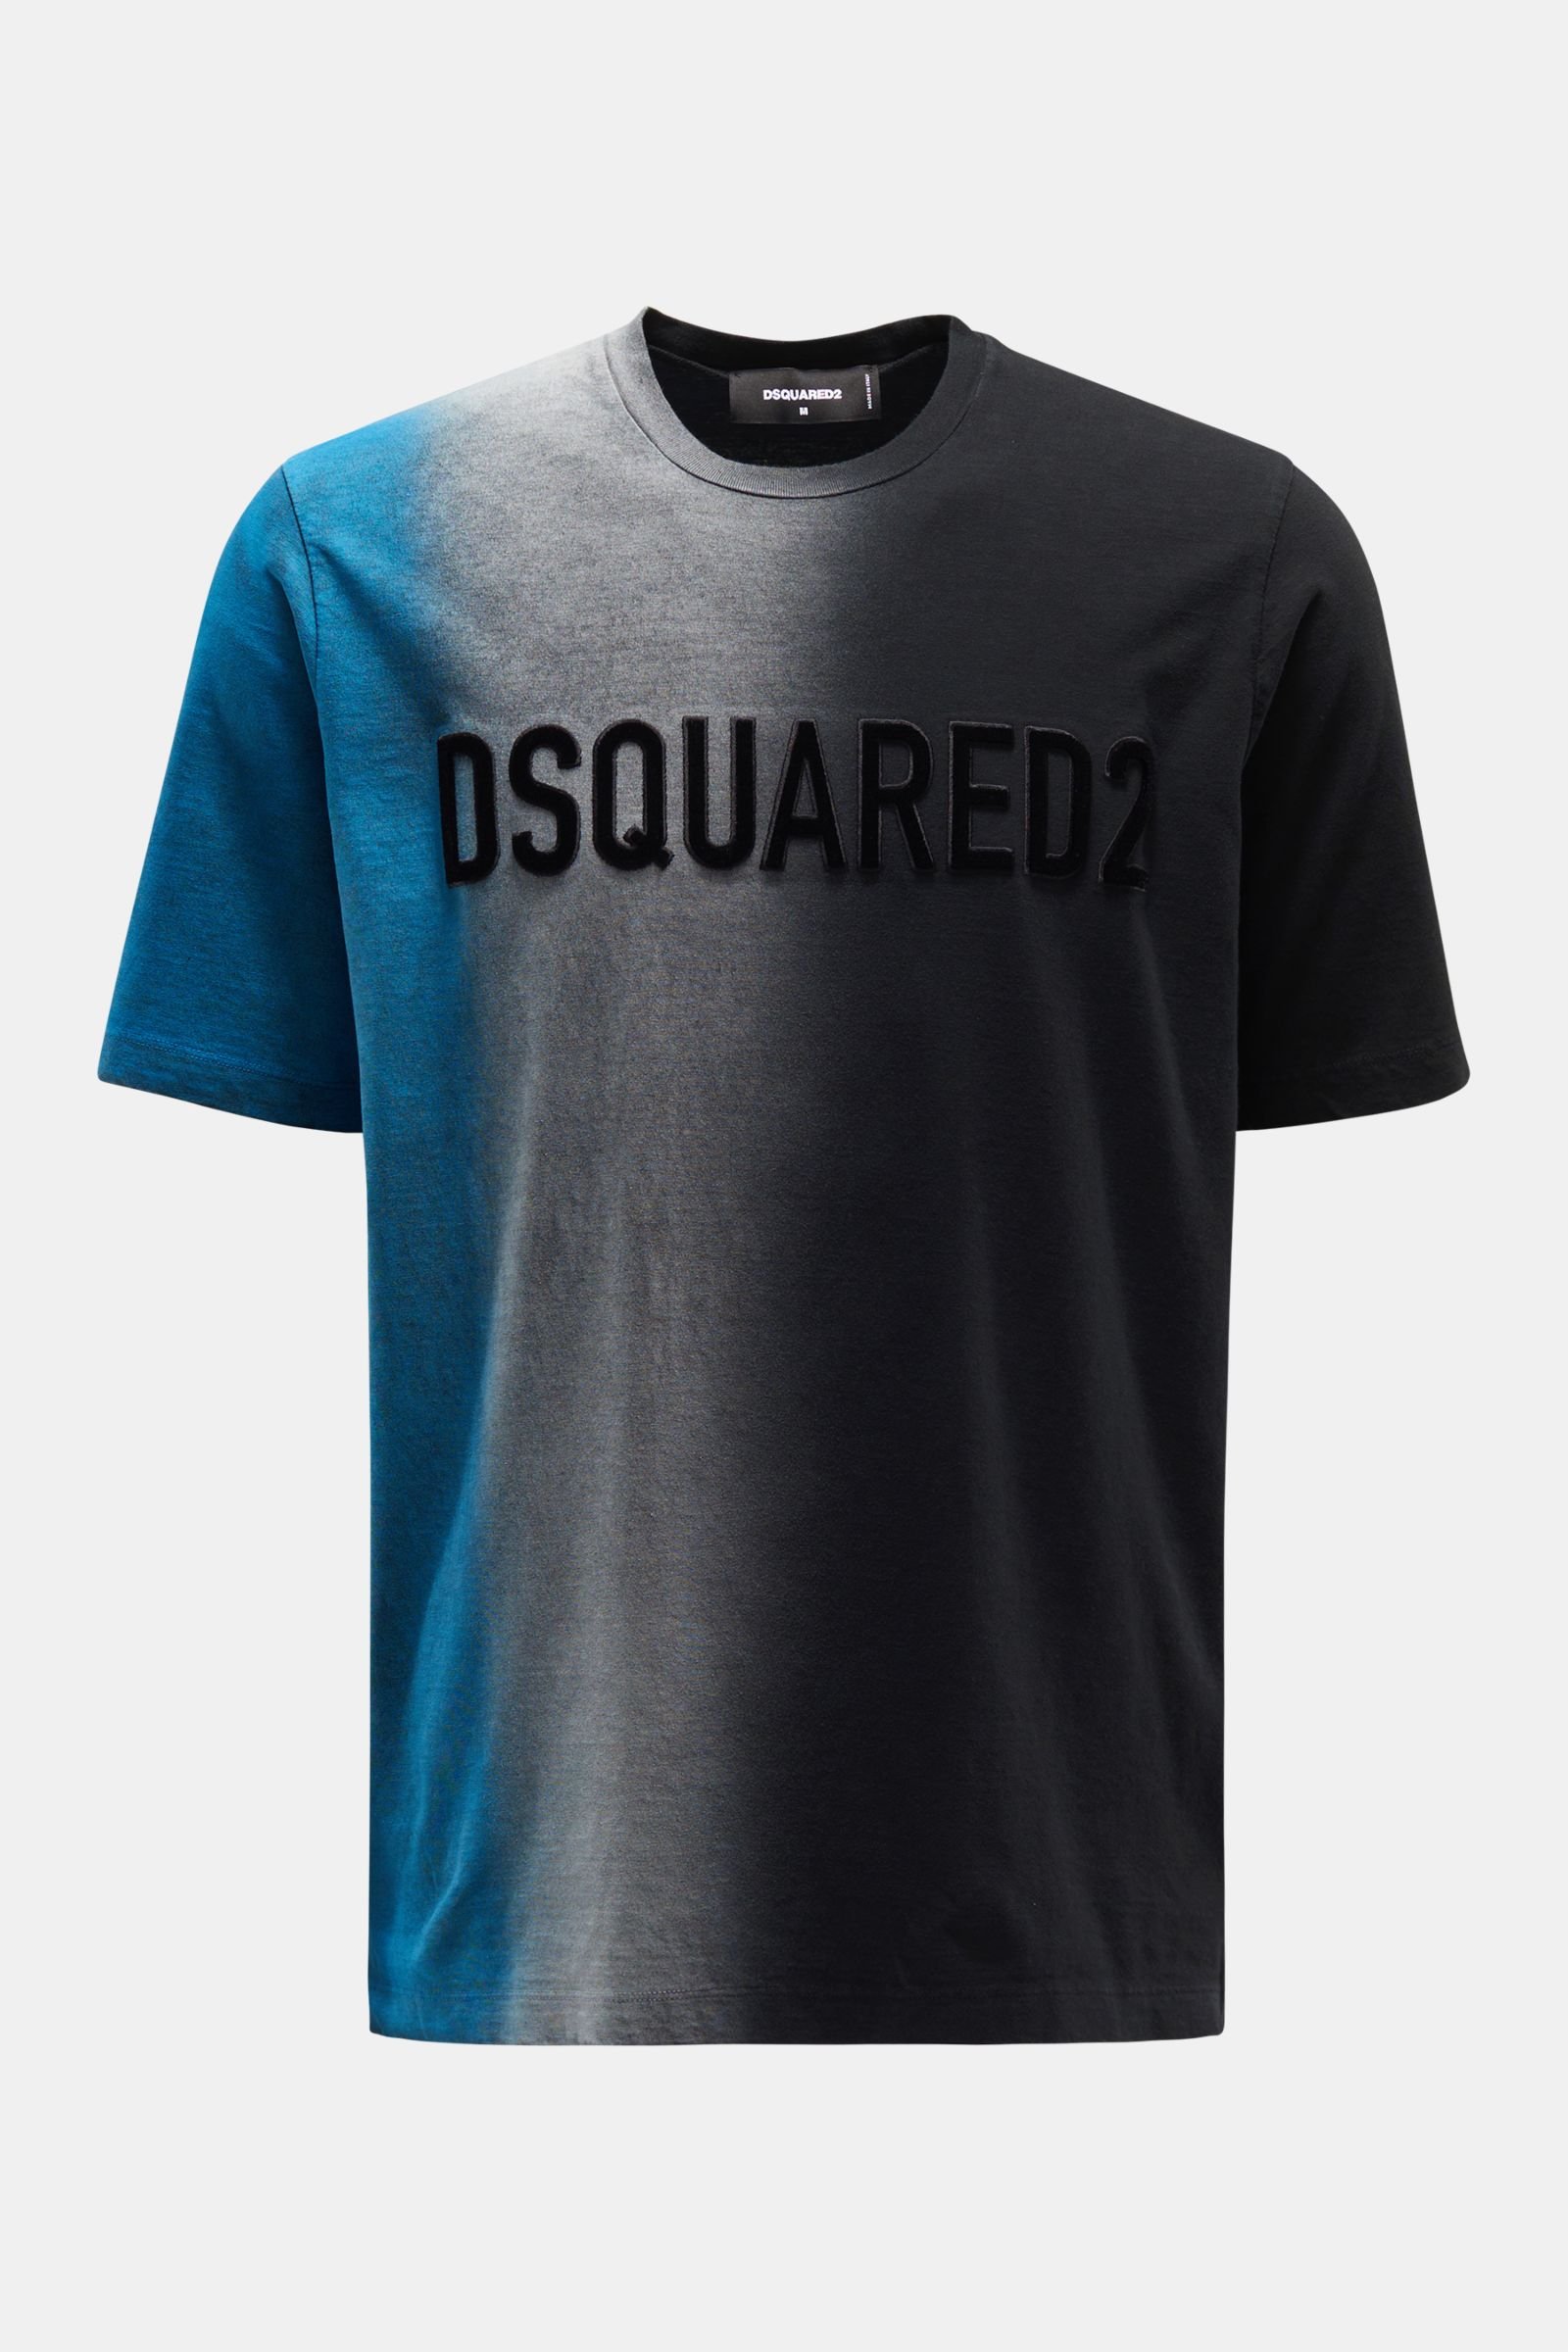 Rundhals-T-Shirt blau/grau/schwarz